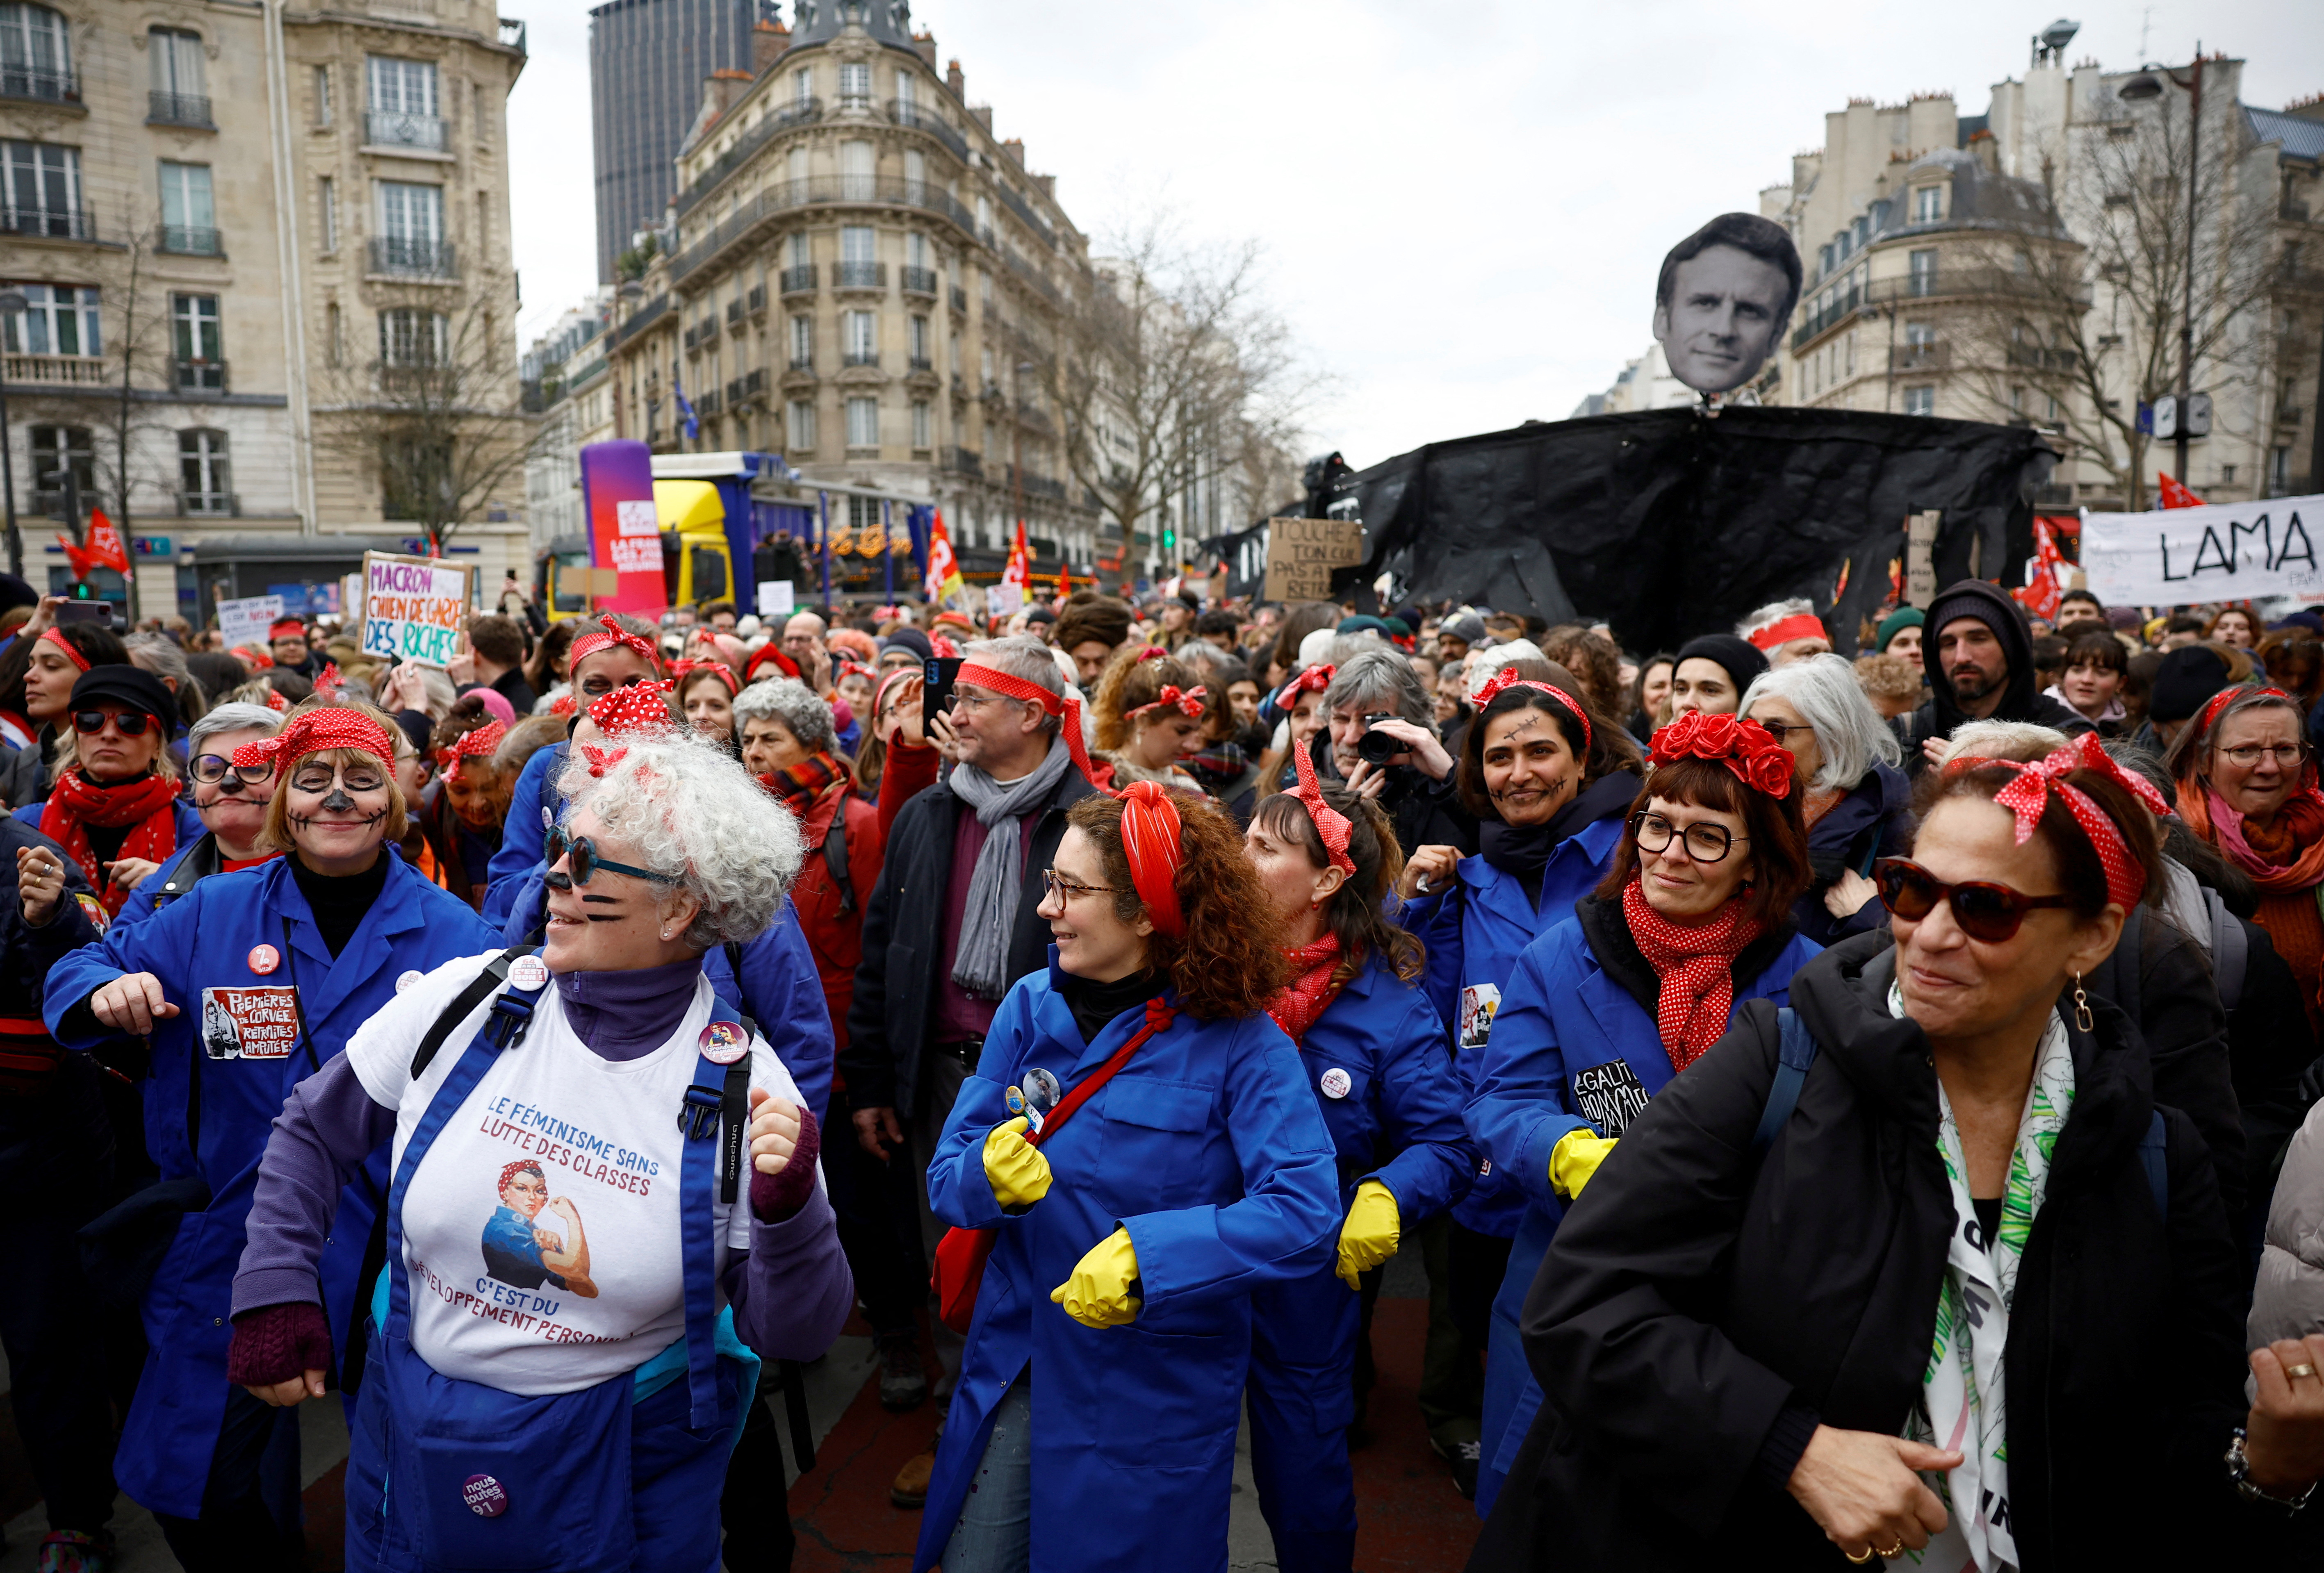 Personas asisten a una manifestación contra el plan de reforma de las pensiones del gobierno francés en París, como parte del sexto día de huelga nacional y protestas (REUTERS/Sarah Meyssonnier)